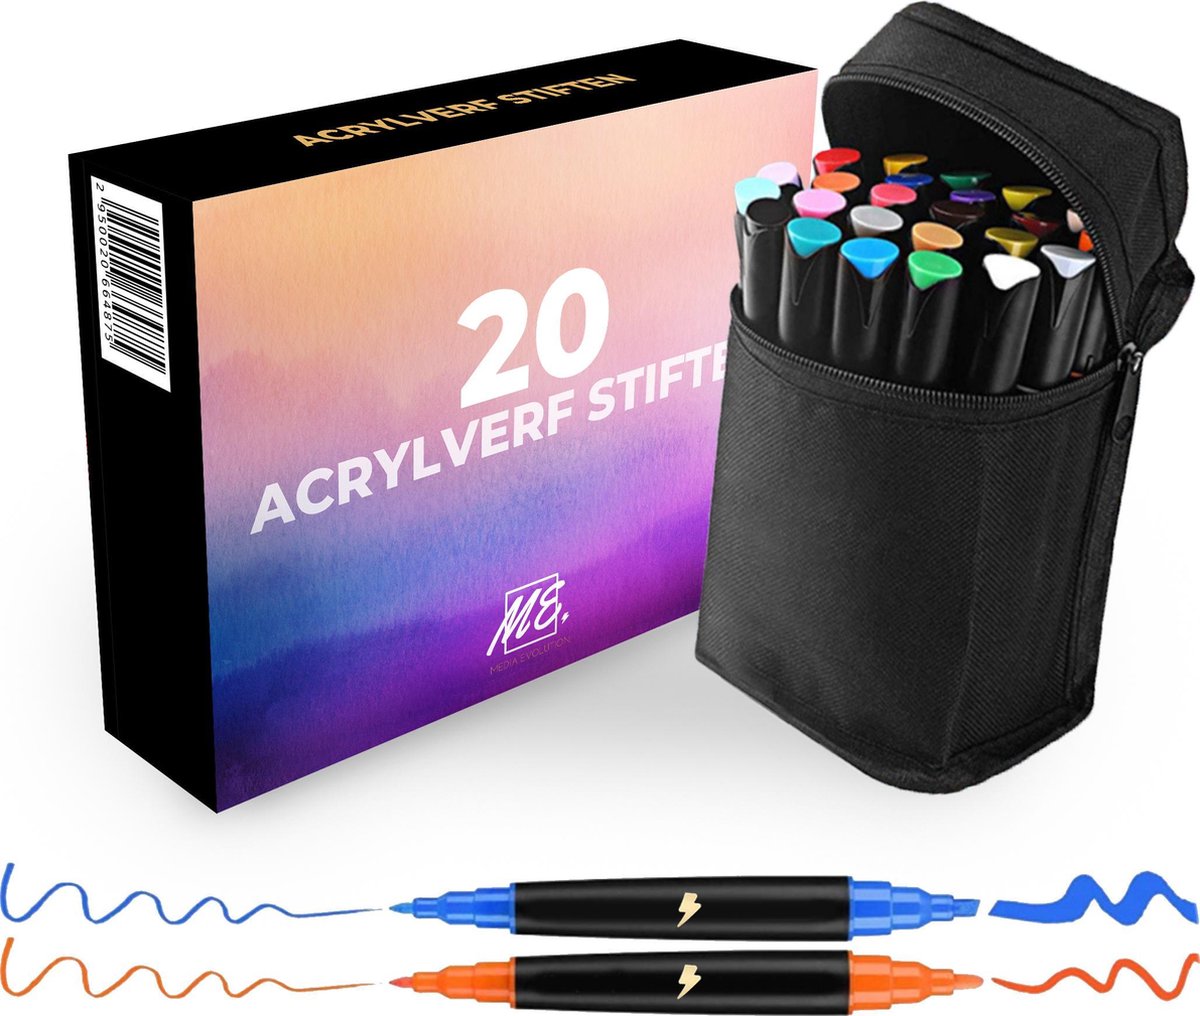 DRAW-IT Stiften - Acryl Stiften - Happy Stones - Voor Kinderen & Volwassenen - 4 in 1 - 0.7mm 1mm 2mm 4mm Punt - Verfstiften - 20 kleuren - Incl. Opbergtas